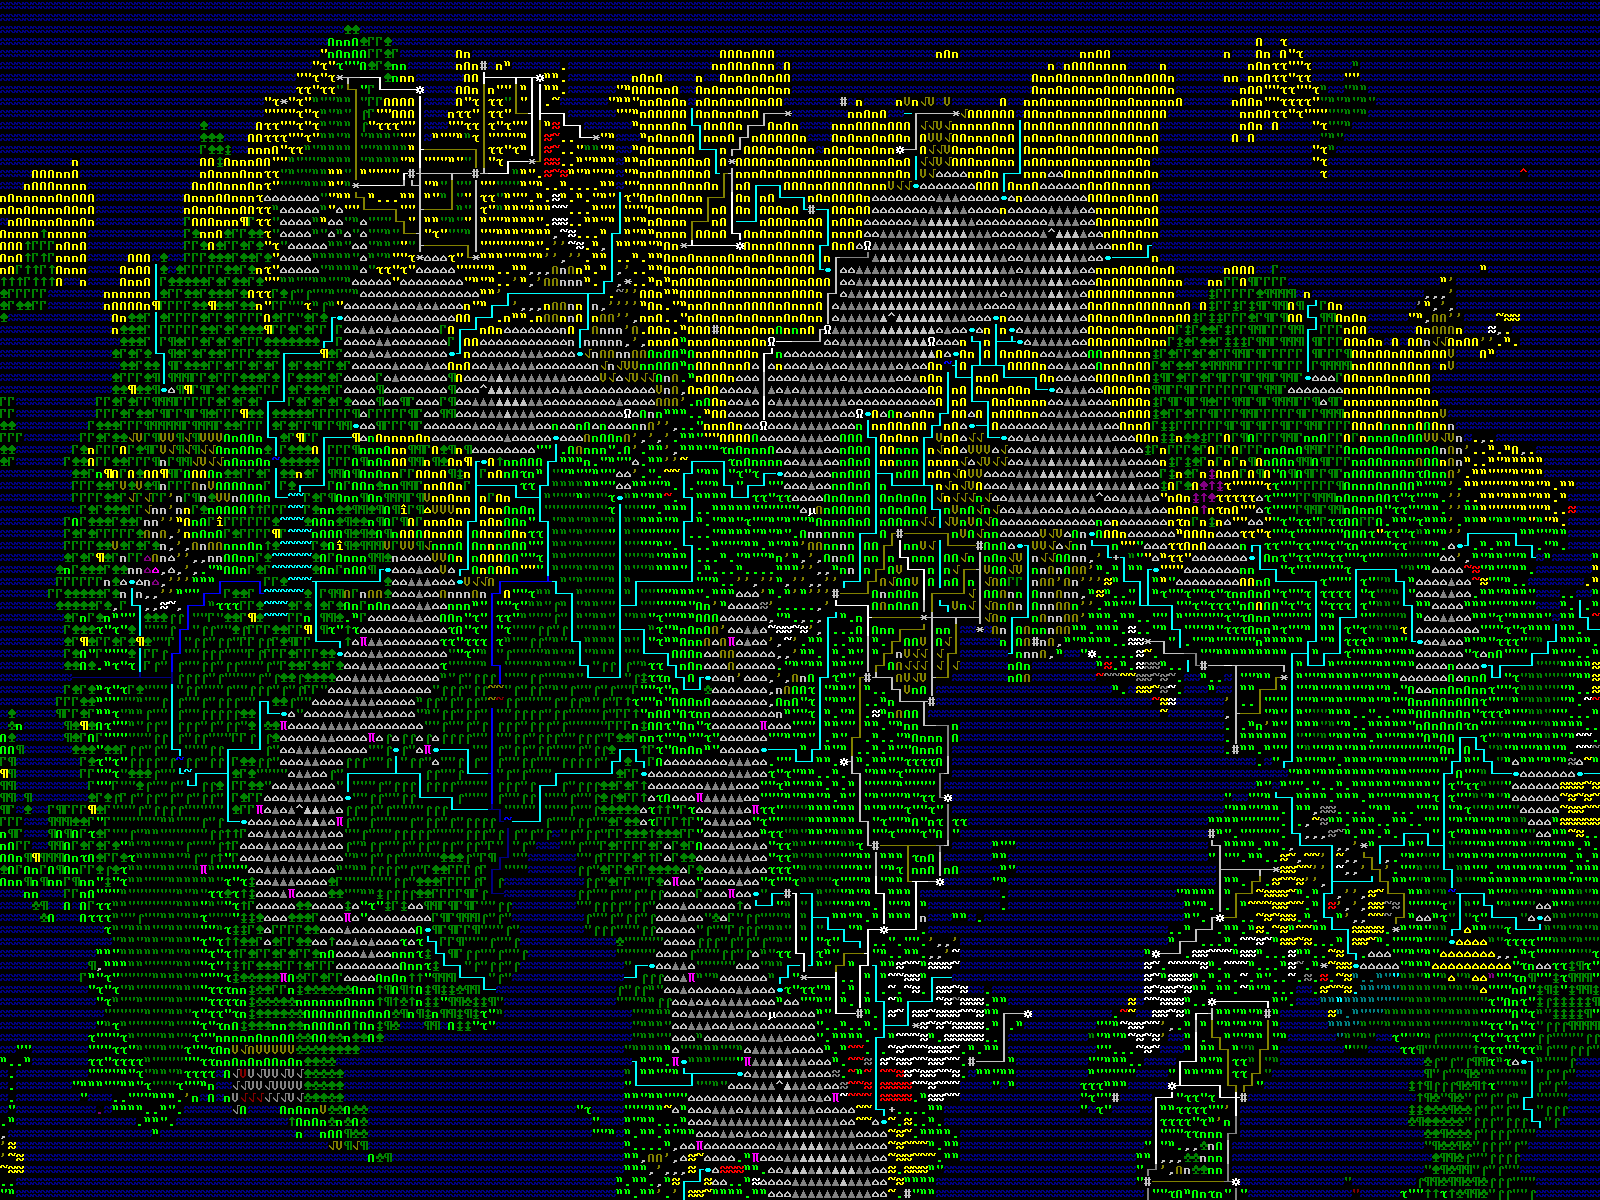 dwarf fortress ascii vs graphics